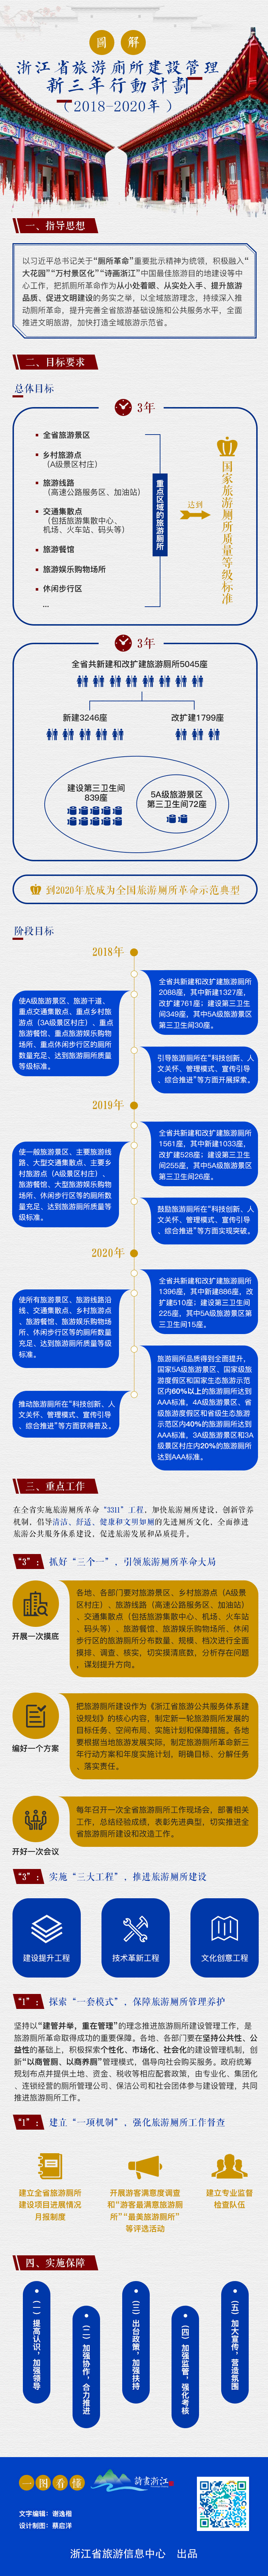 3.图解《浙江省旅游厕所建设管理三年行动计划（2018-2020年）》.jpg